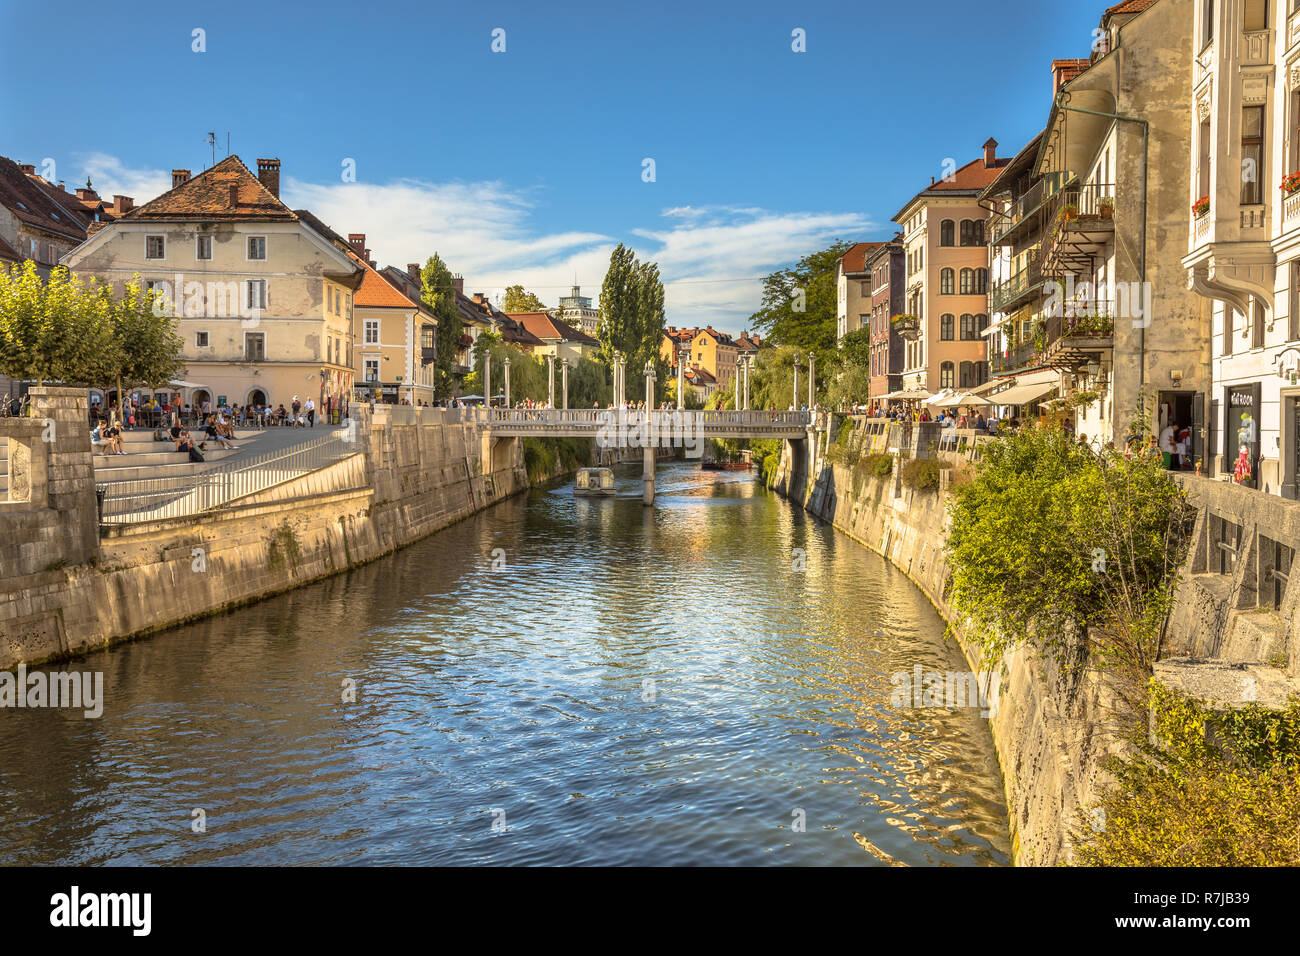 LJUBLJANA, SLOVENIA, AUGUST 11 2017: Cityscape view on Ljubljanica river canal in Ljubljana old town Stock Photo